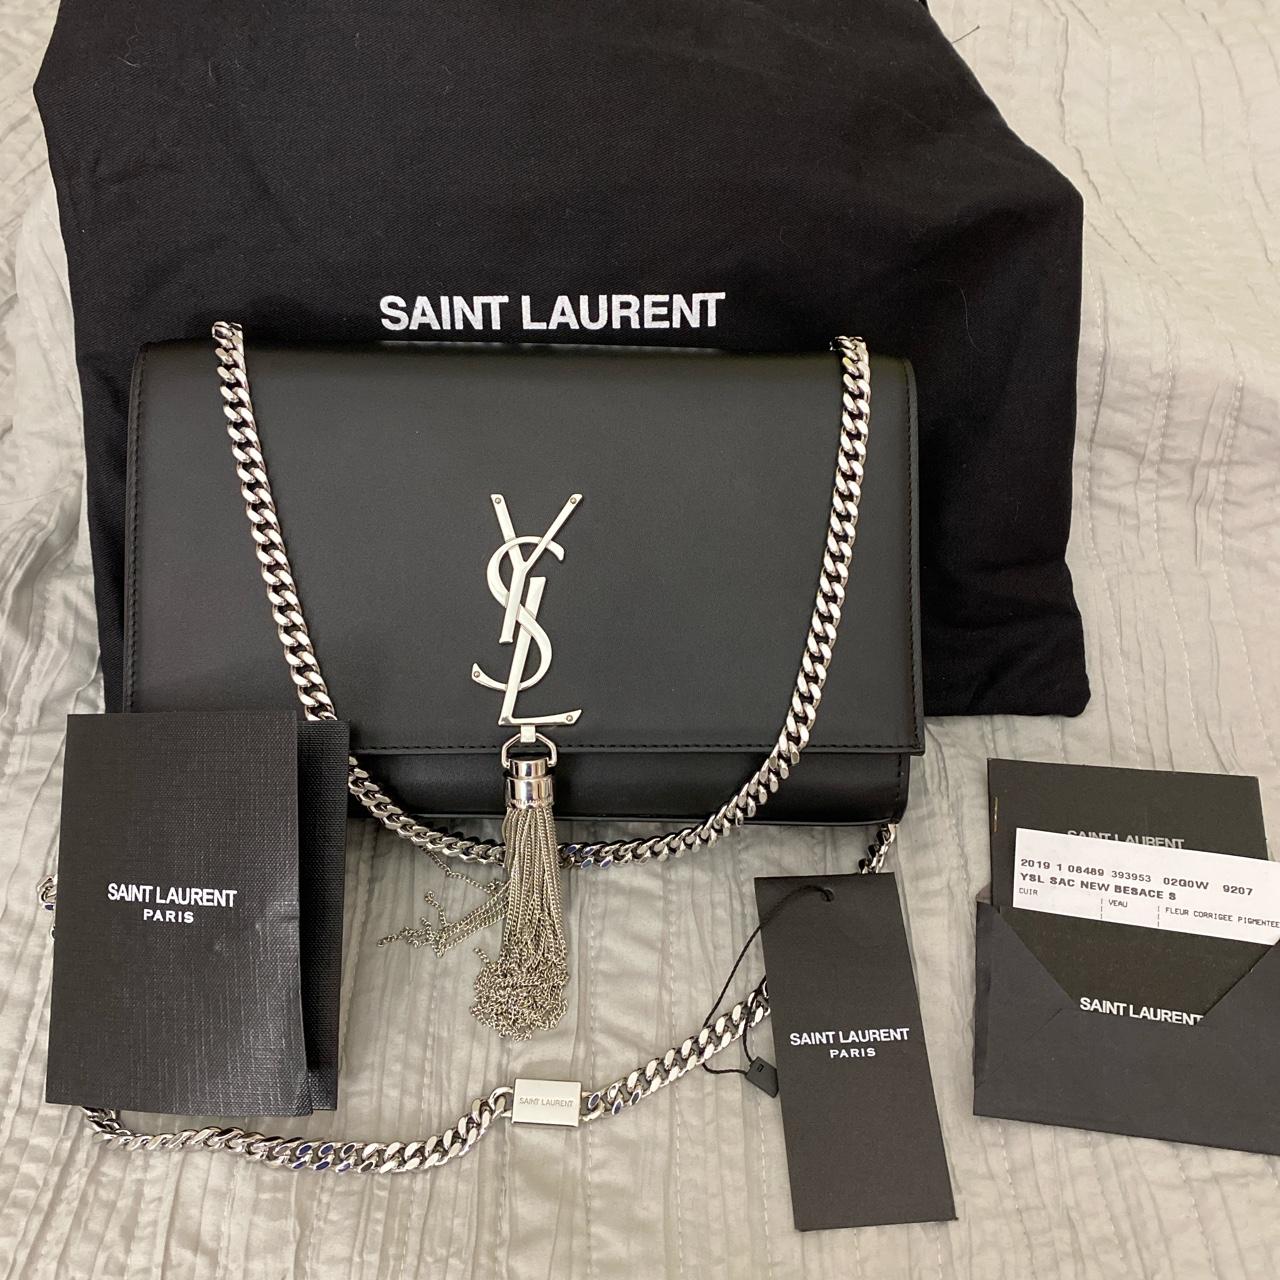 Yves Saint Laurent Original Bag - Black